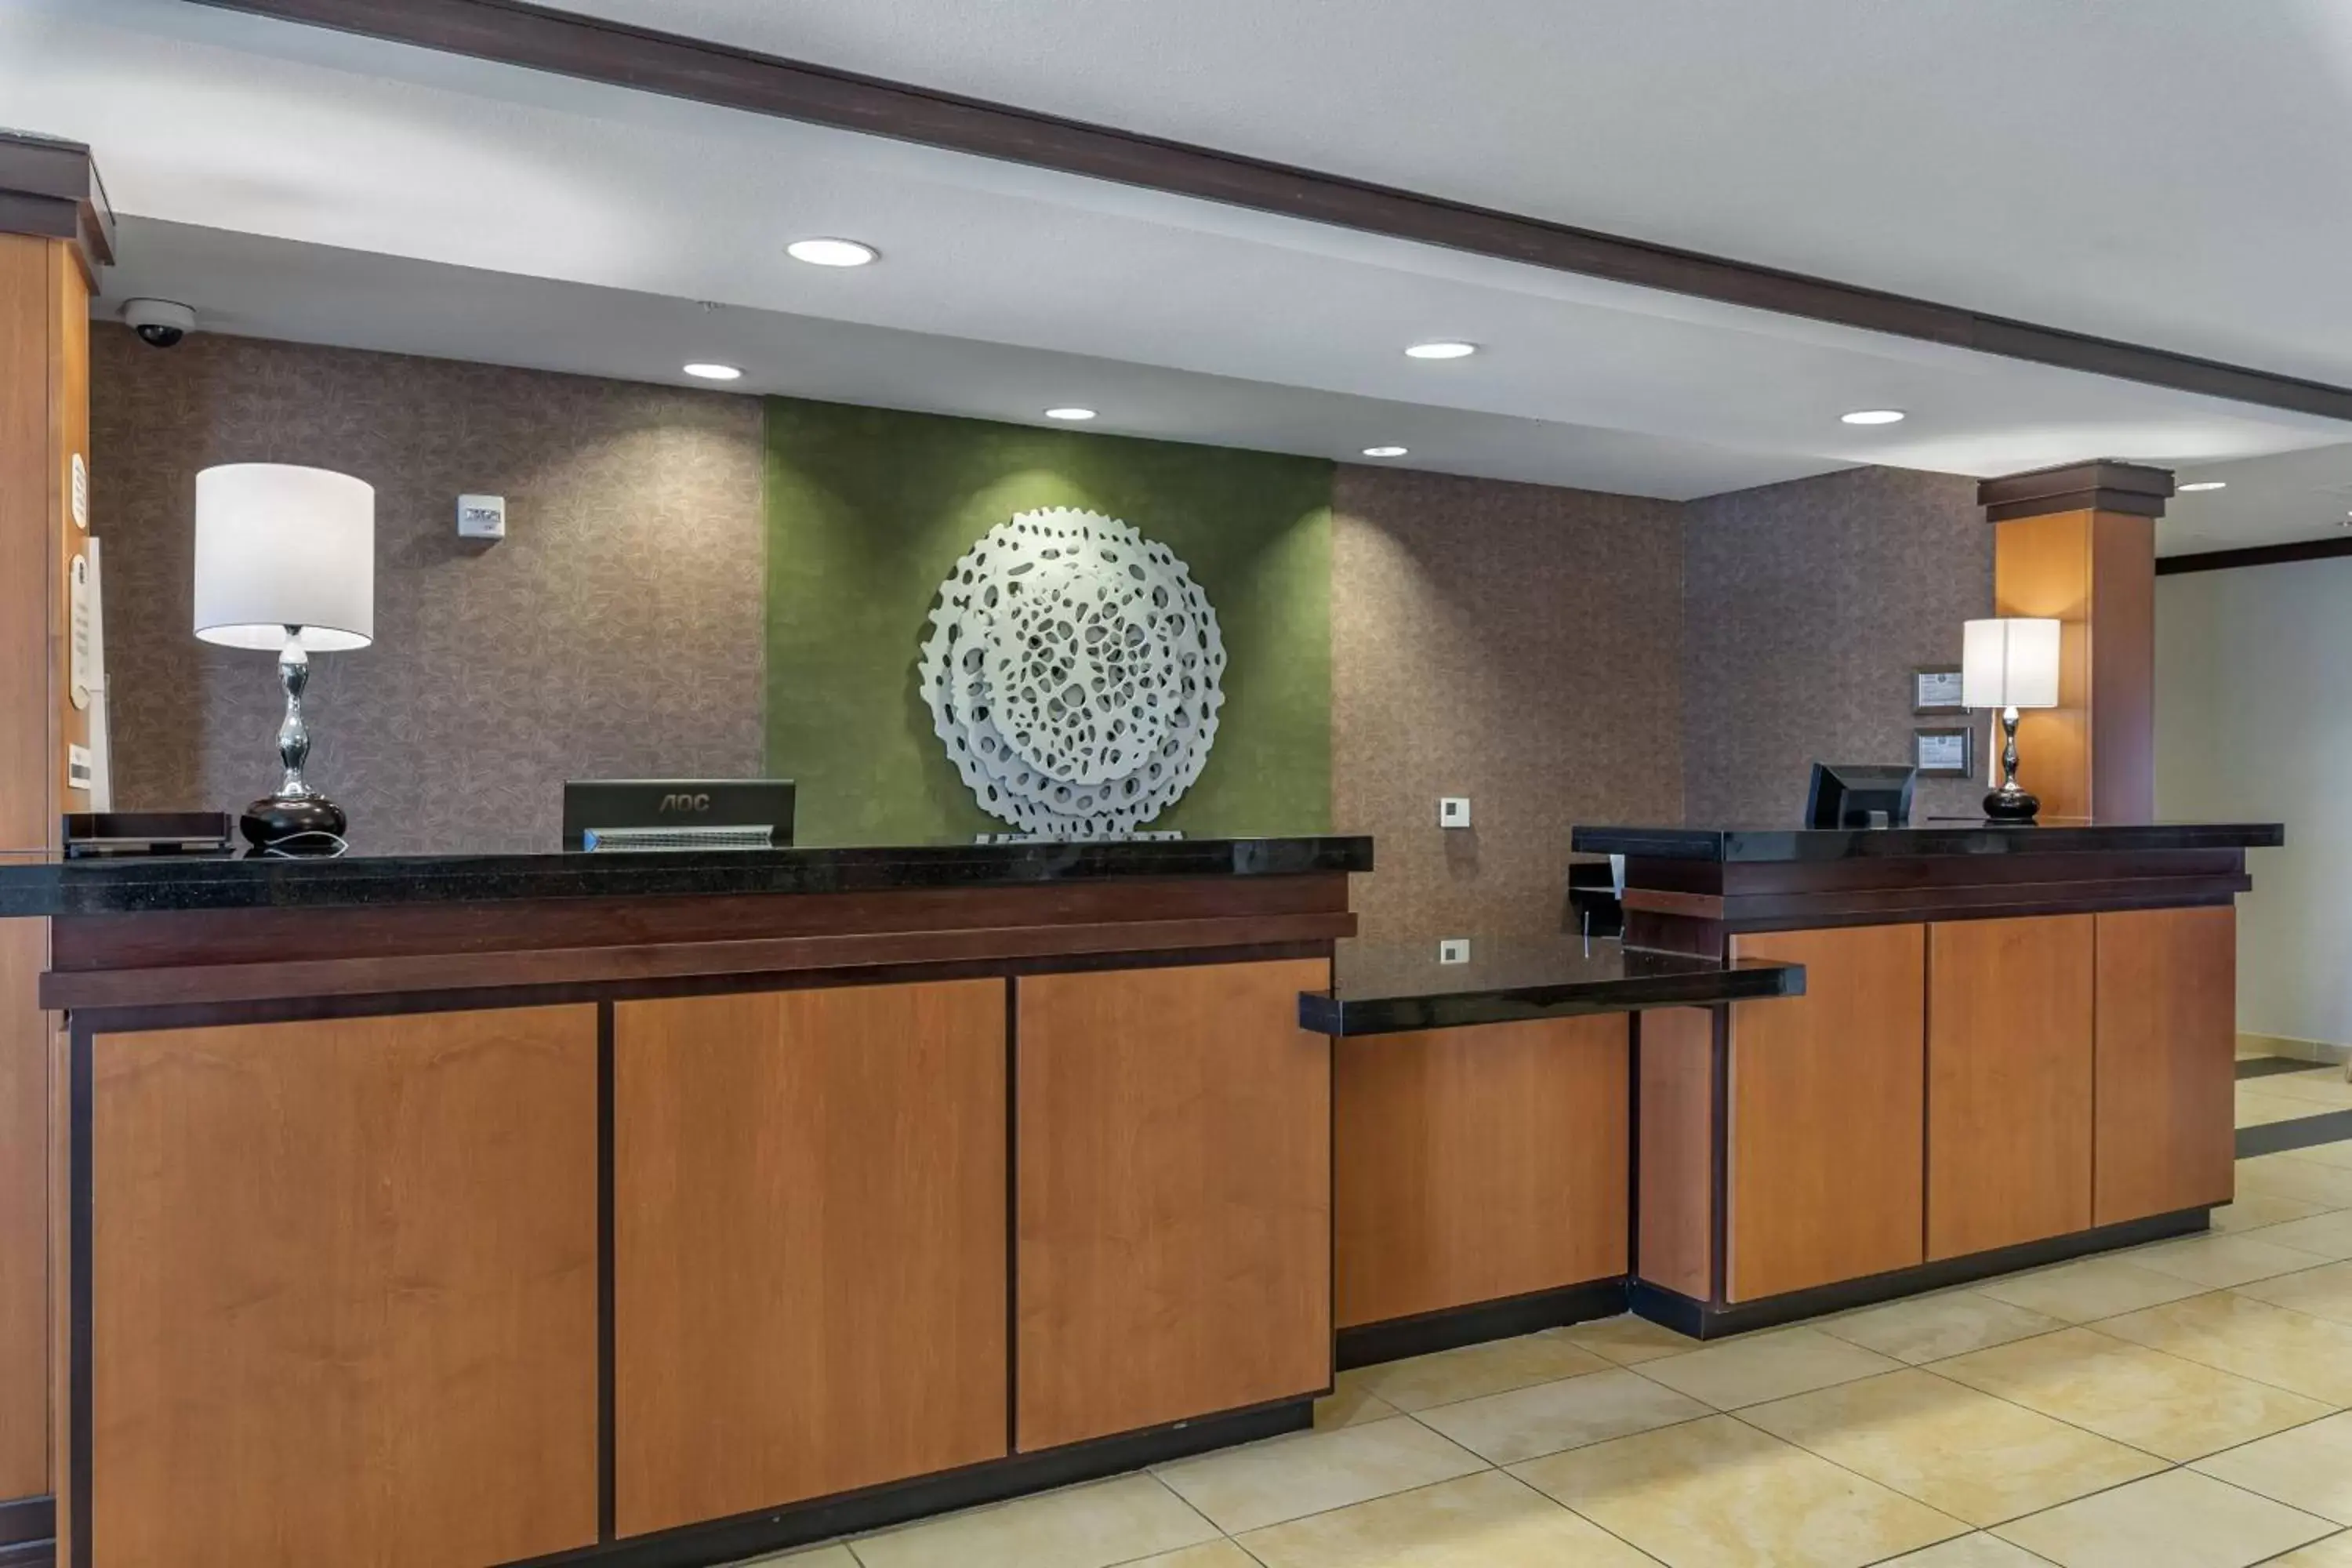 Lobby or reception, Lobby/Reception in Fairfield Inn & Suites by Marriott Texarkana